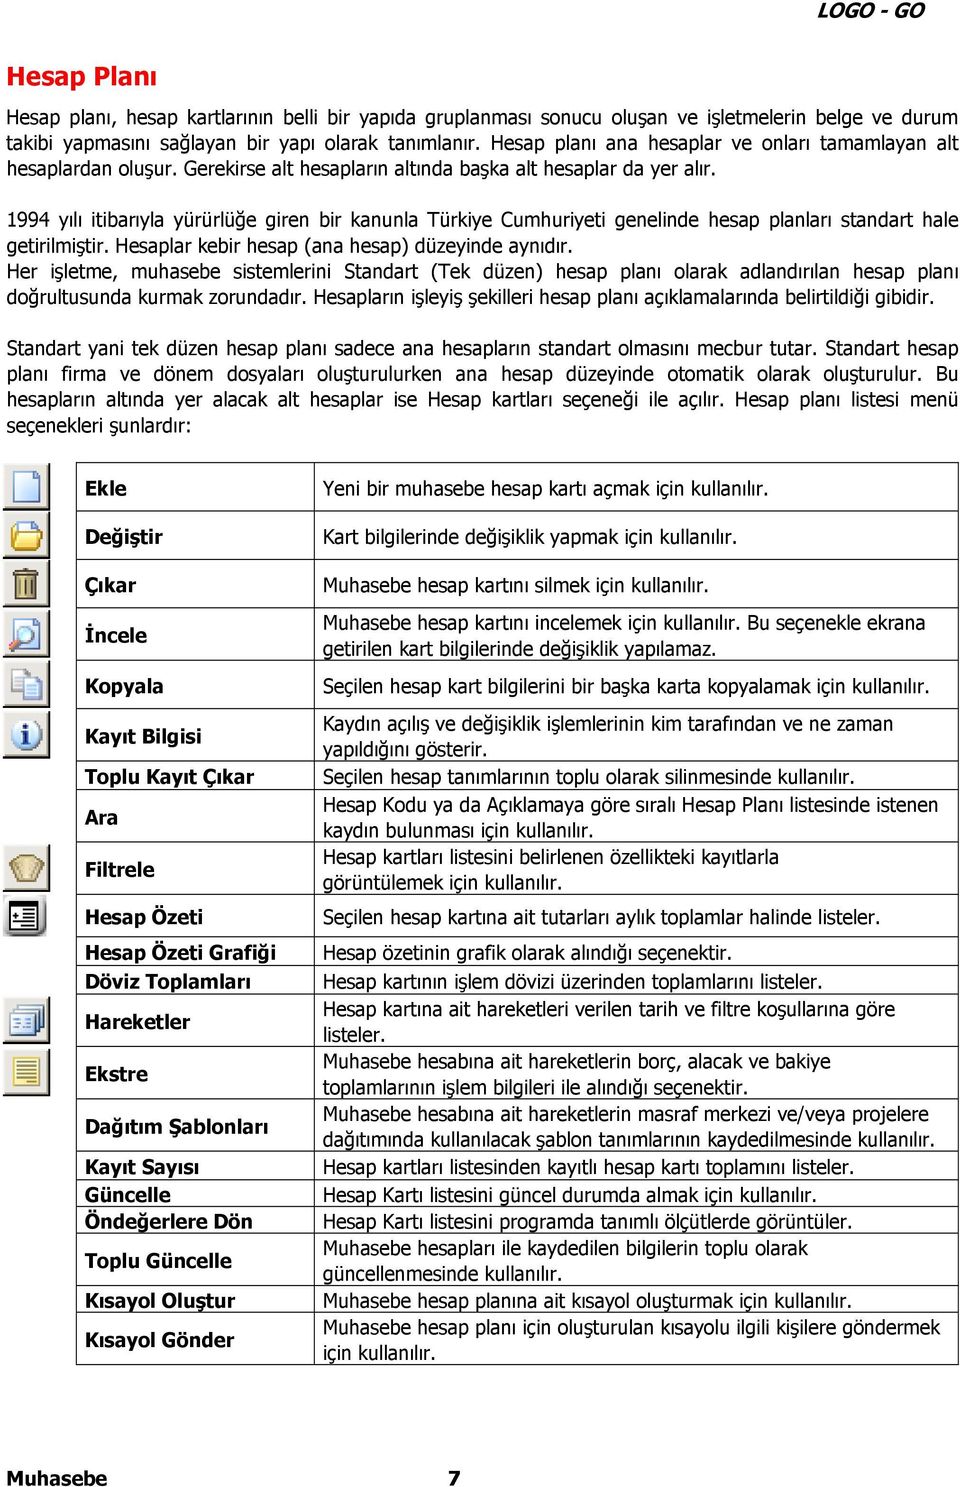 1994 yılı itibarıyla yürürlüğe giren bir kanunla Türkiye Cumhuriyeti genelinde hesap planları standart hale getirilmiştir. Hesaplar kebir hesap (ana hesap) düzeyinde aynıdır.